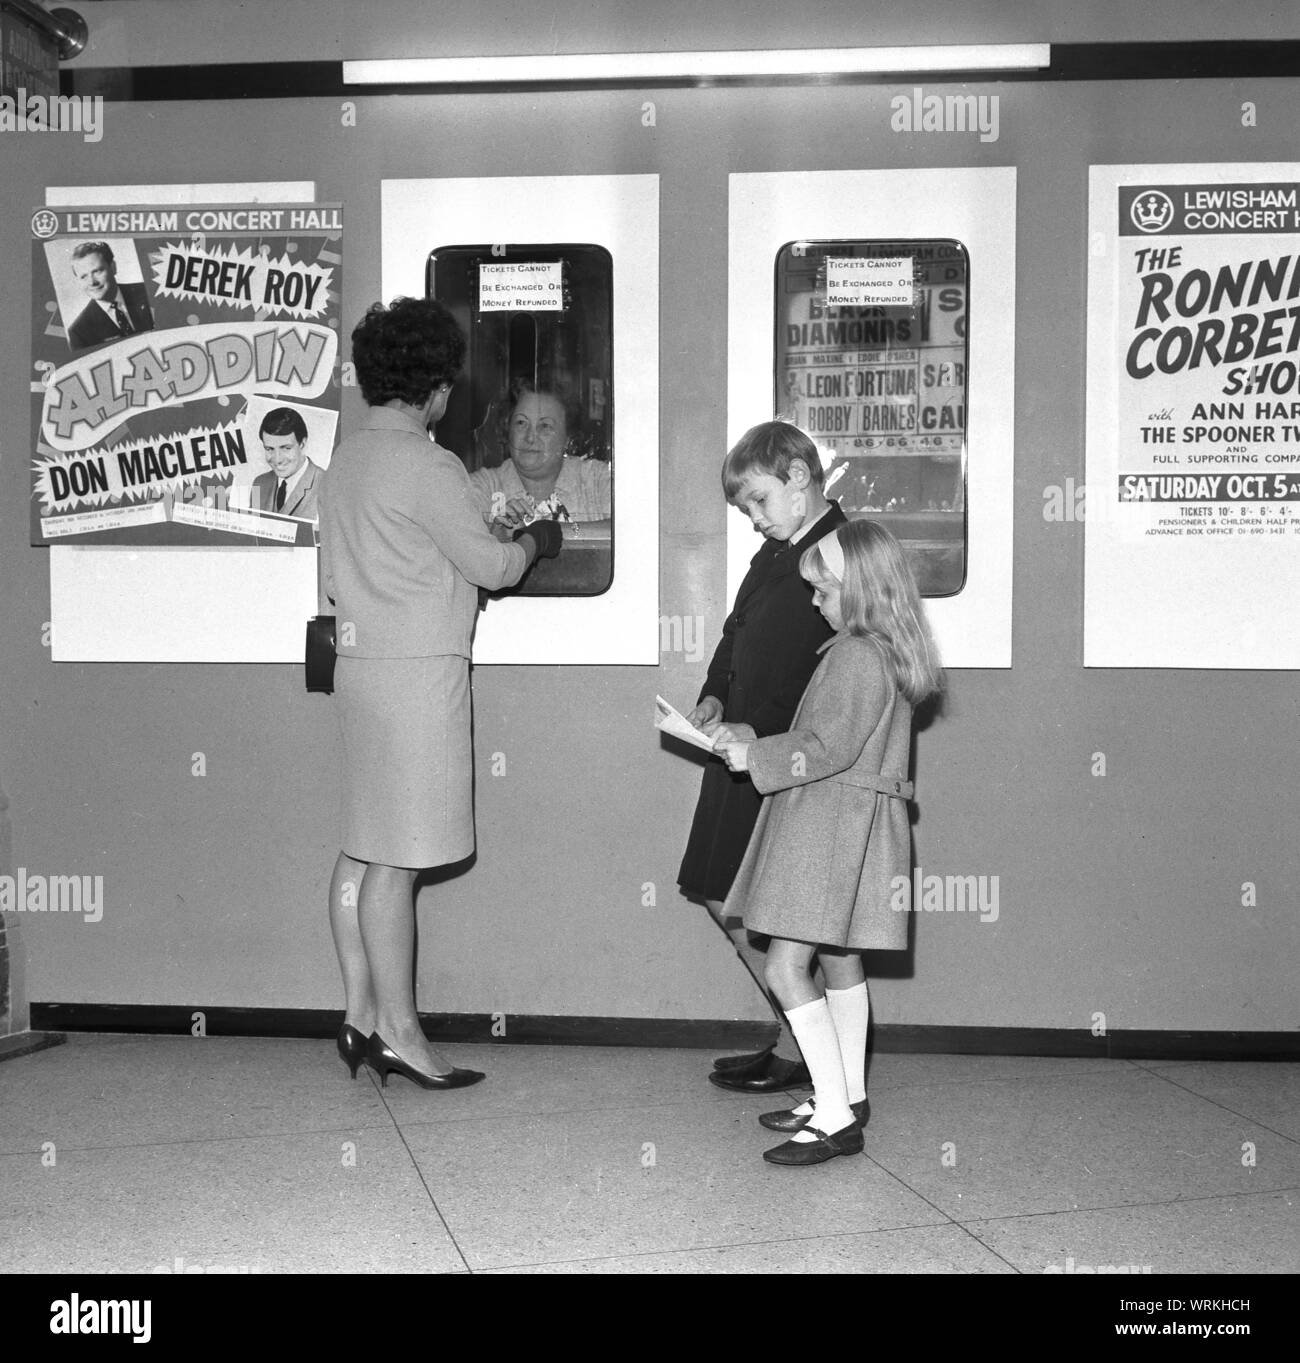 Années 1970, historiques, une mère avec ses deux enfants, l'achat de billets pour une pantomine, 'Aladdin' fixant Derek Roy et Don MacLean à la salle de Concert de Lewisham, Lewisham, Londres, Angleterre, Royaume-Uni. Il offre également à la salle de concert, 'Le Ronnie Corbet Show. Banque D'Images